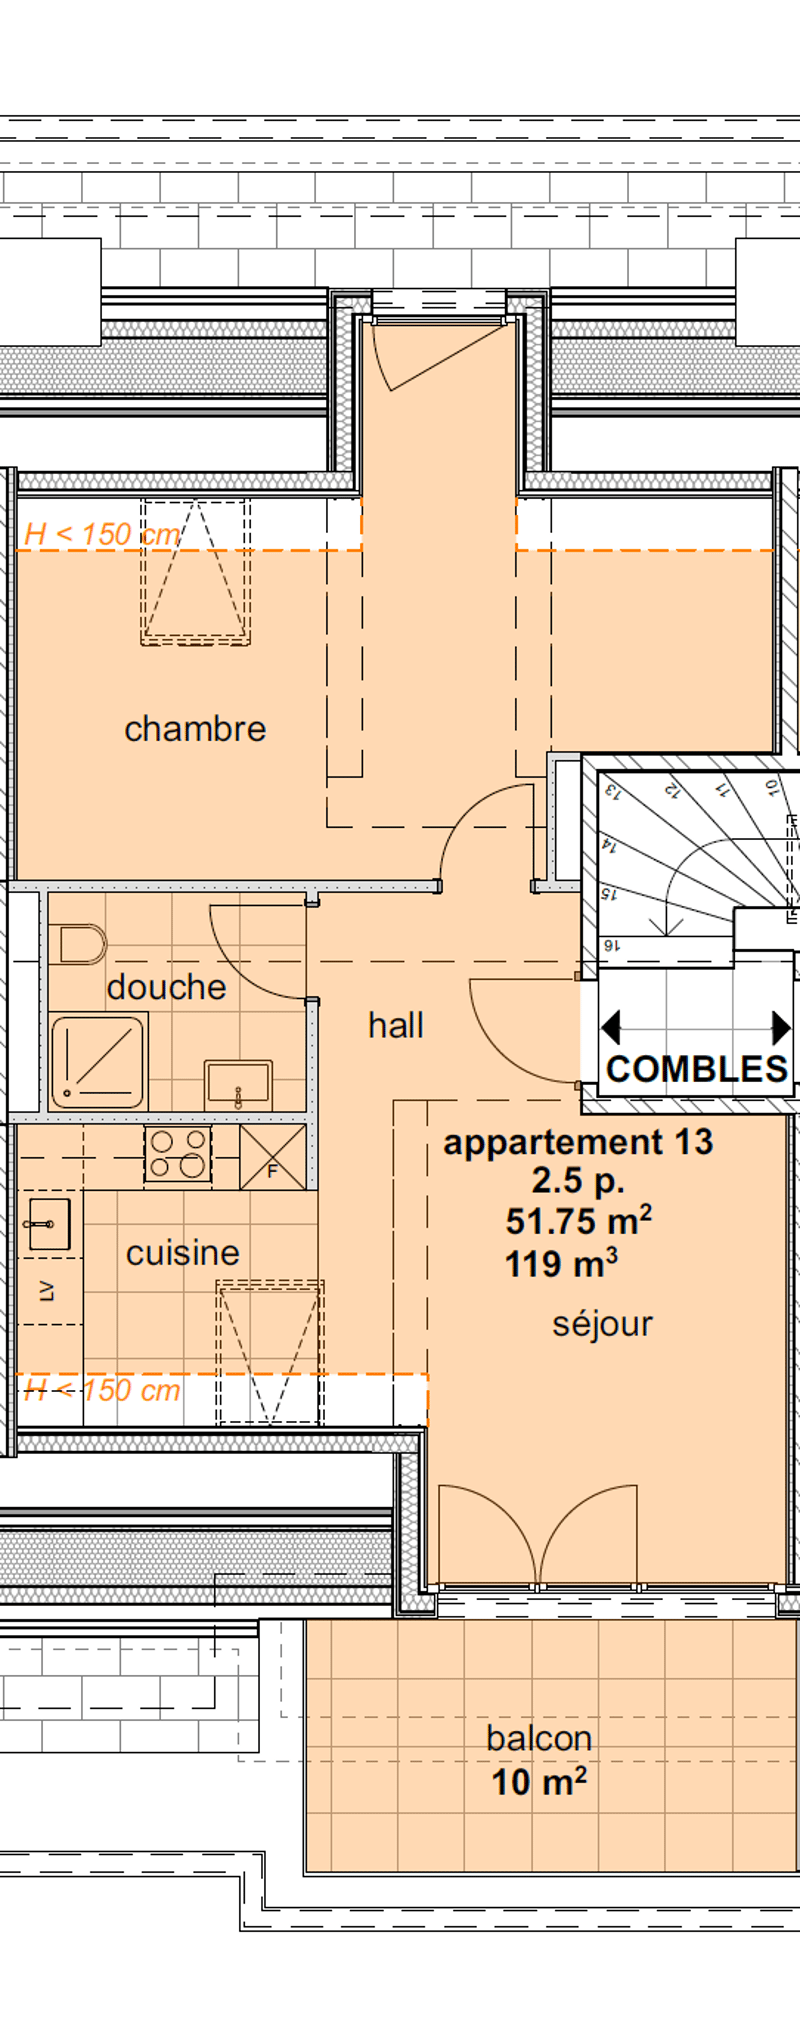 Appartements neufs de 1.5 pièces aux combles (3ème étage) - (Sud centre) (2)